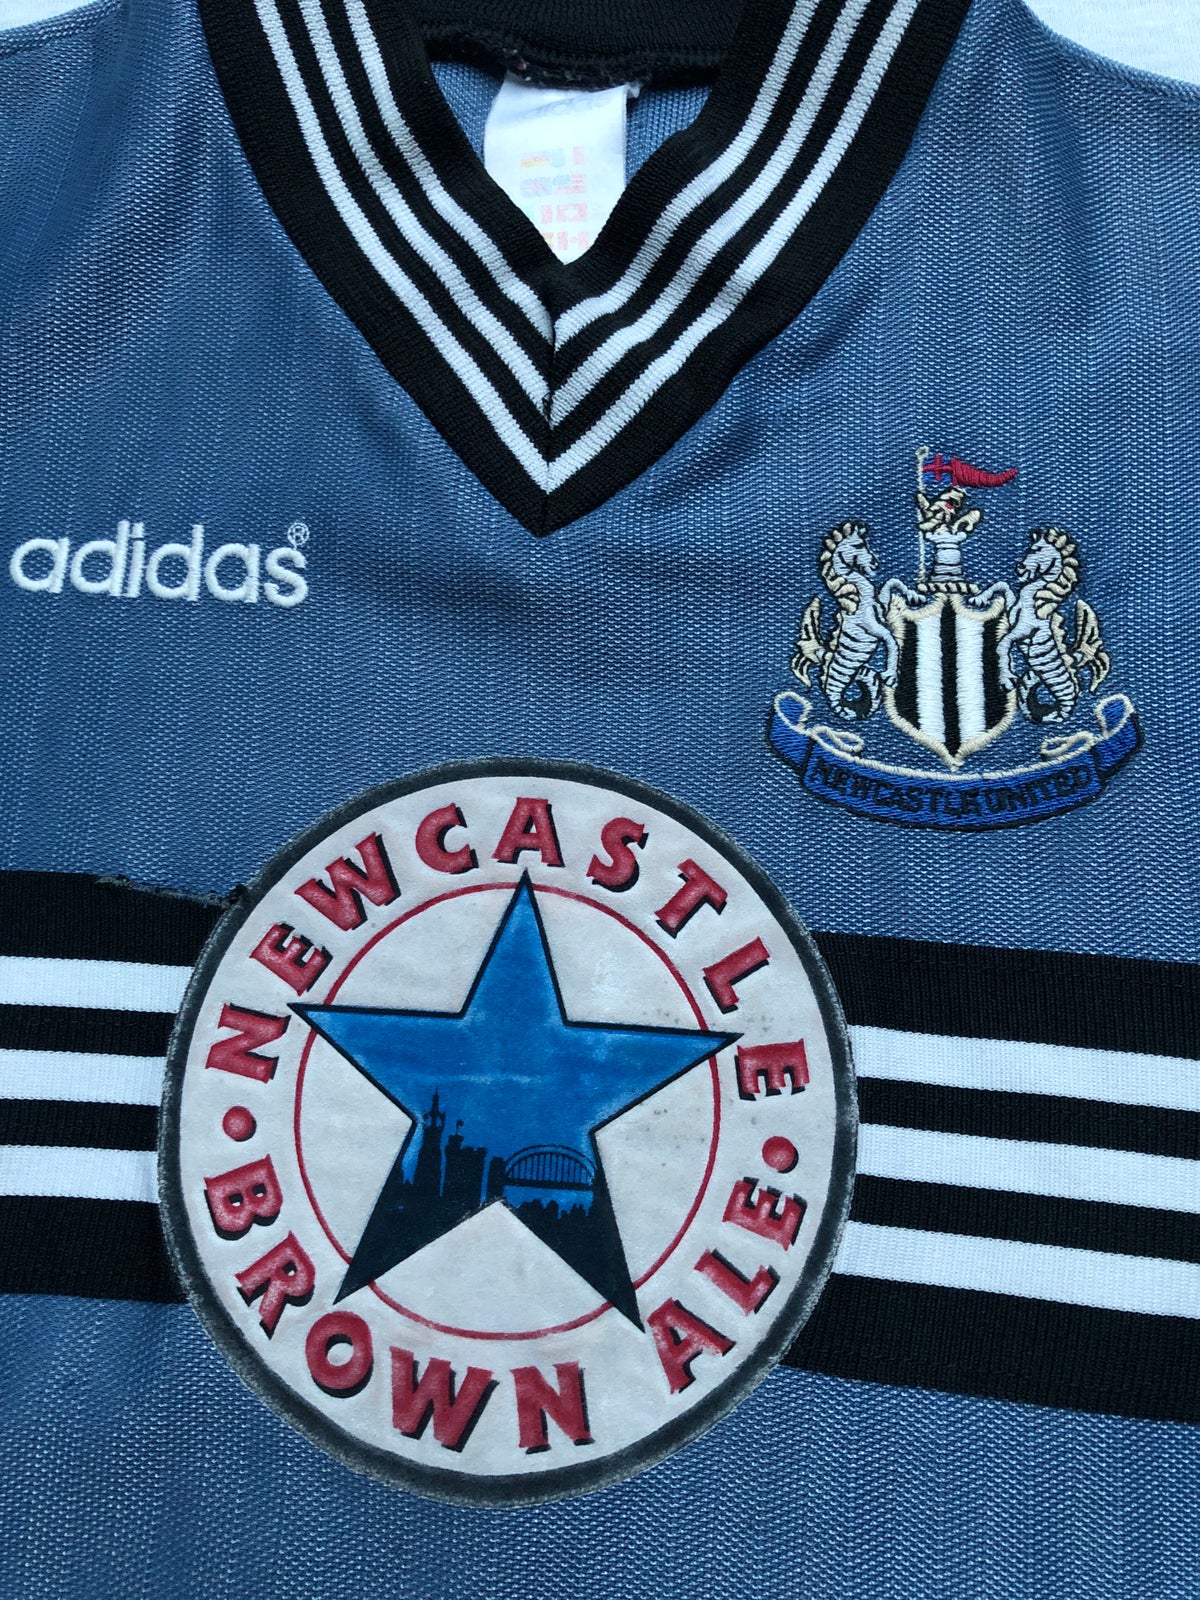 Fodboldtrøje, Newcastle United away 1996/97, Adidas